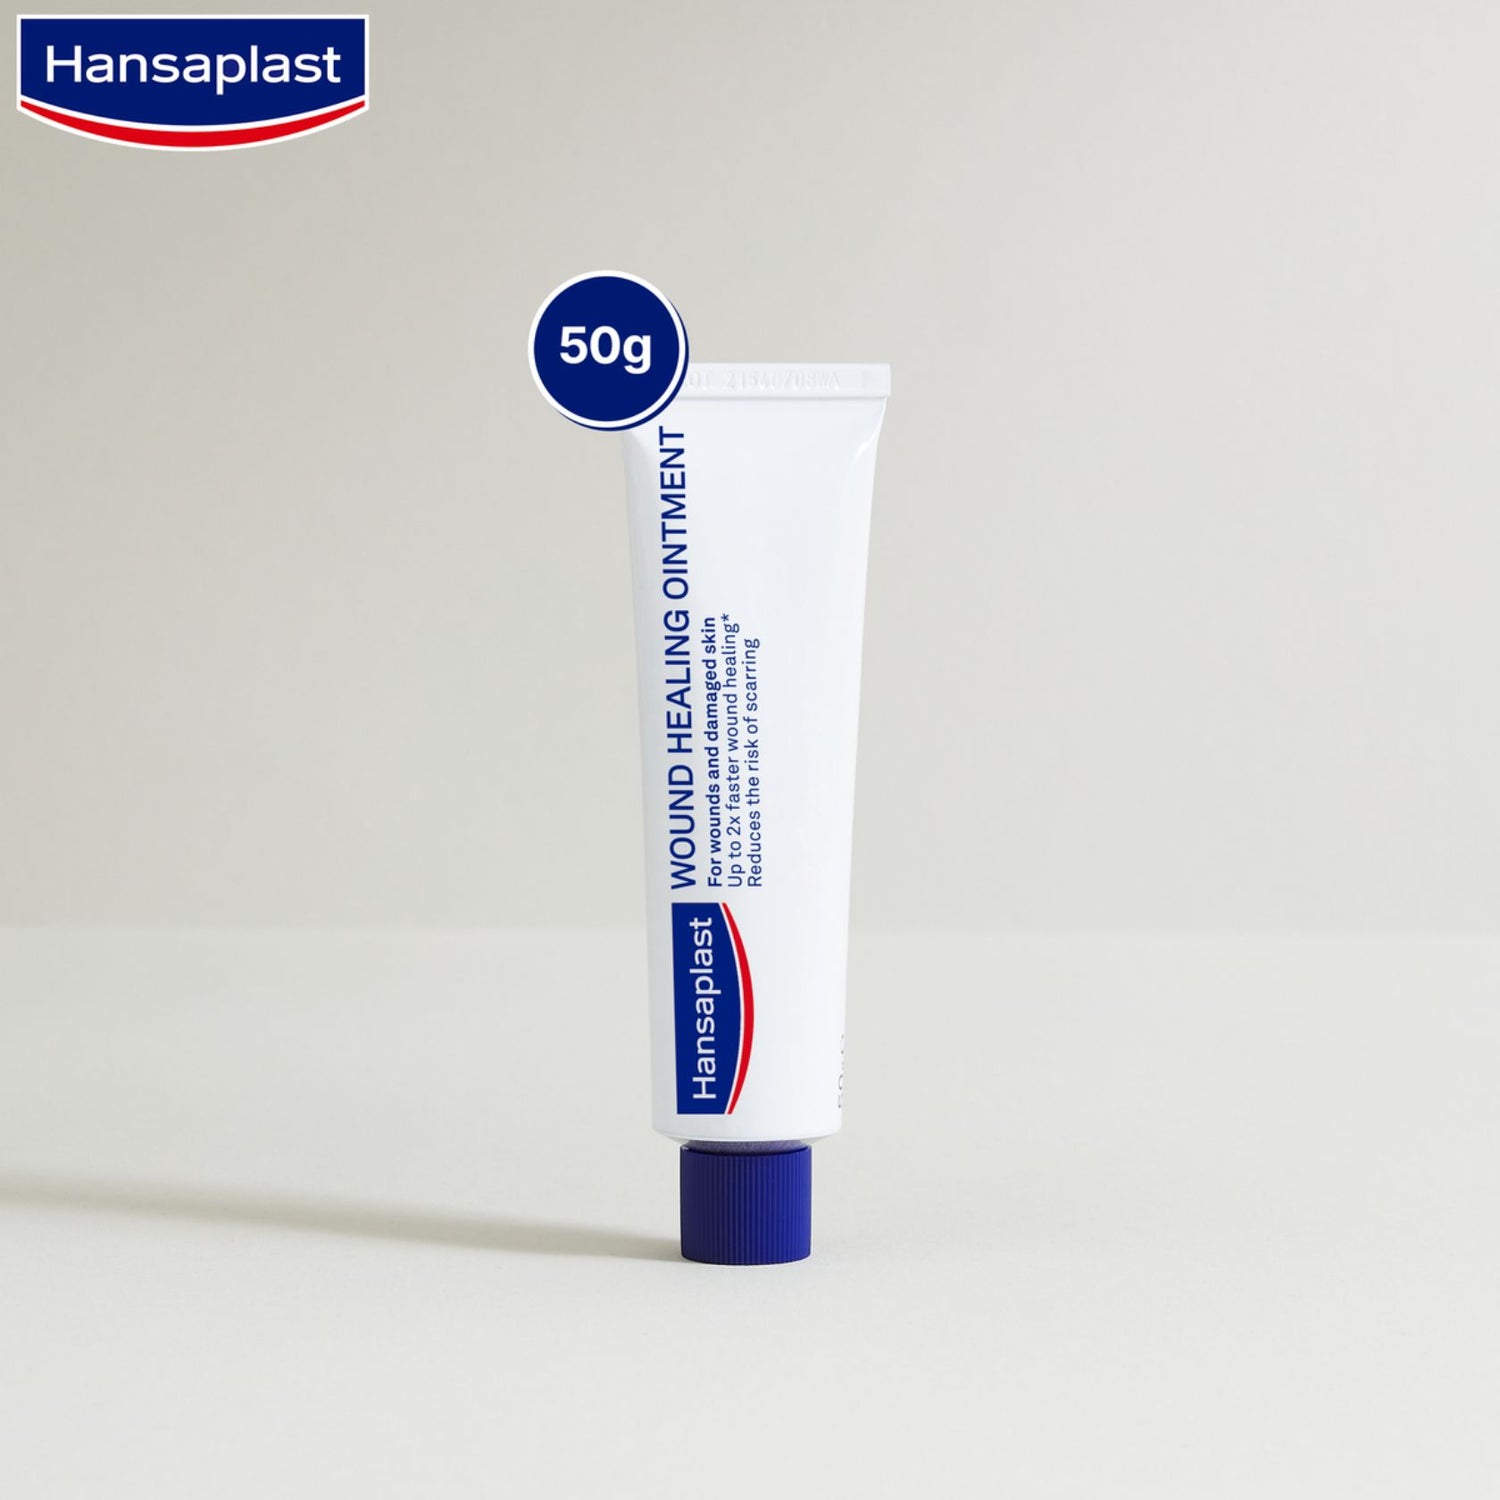 Hansaplast Wound Healing Ointment 50g (1.76fl oz)